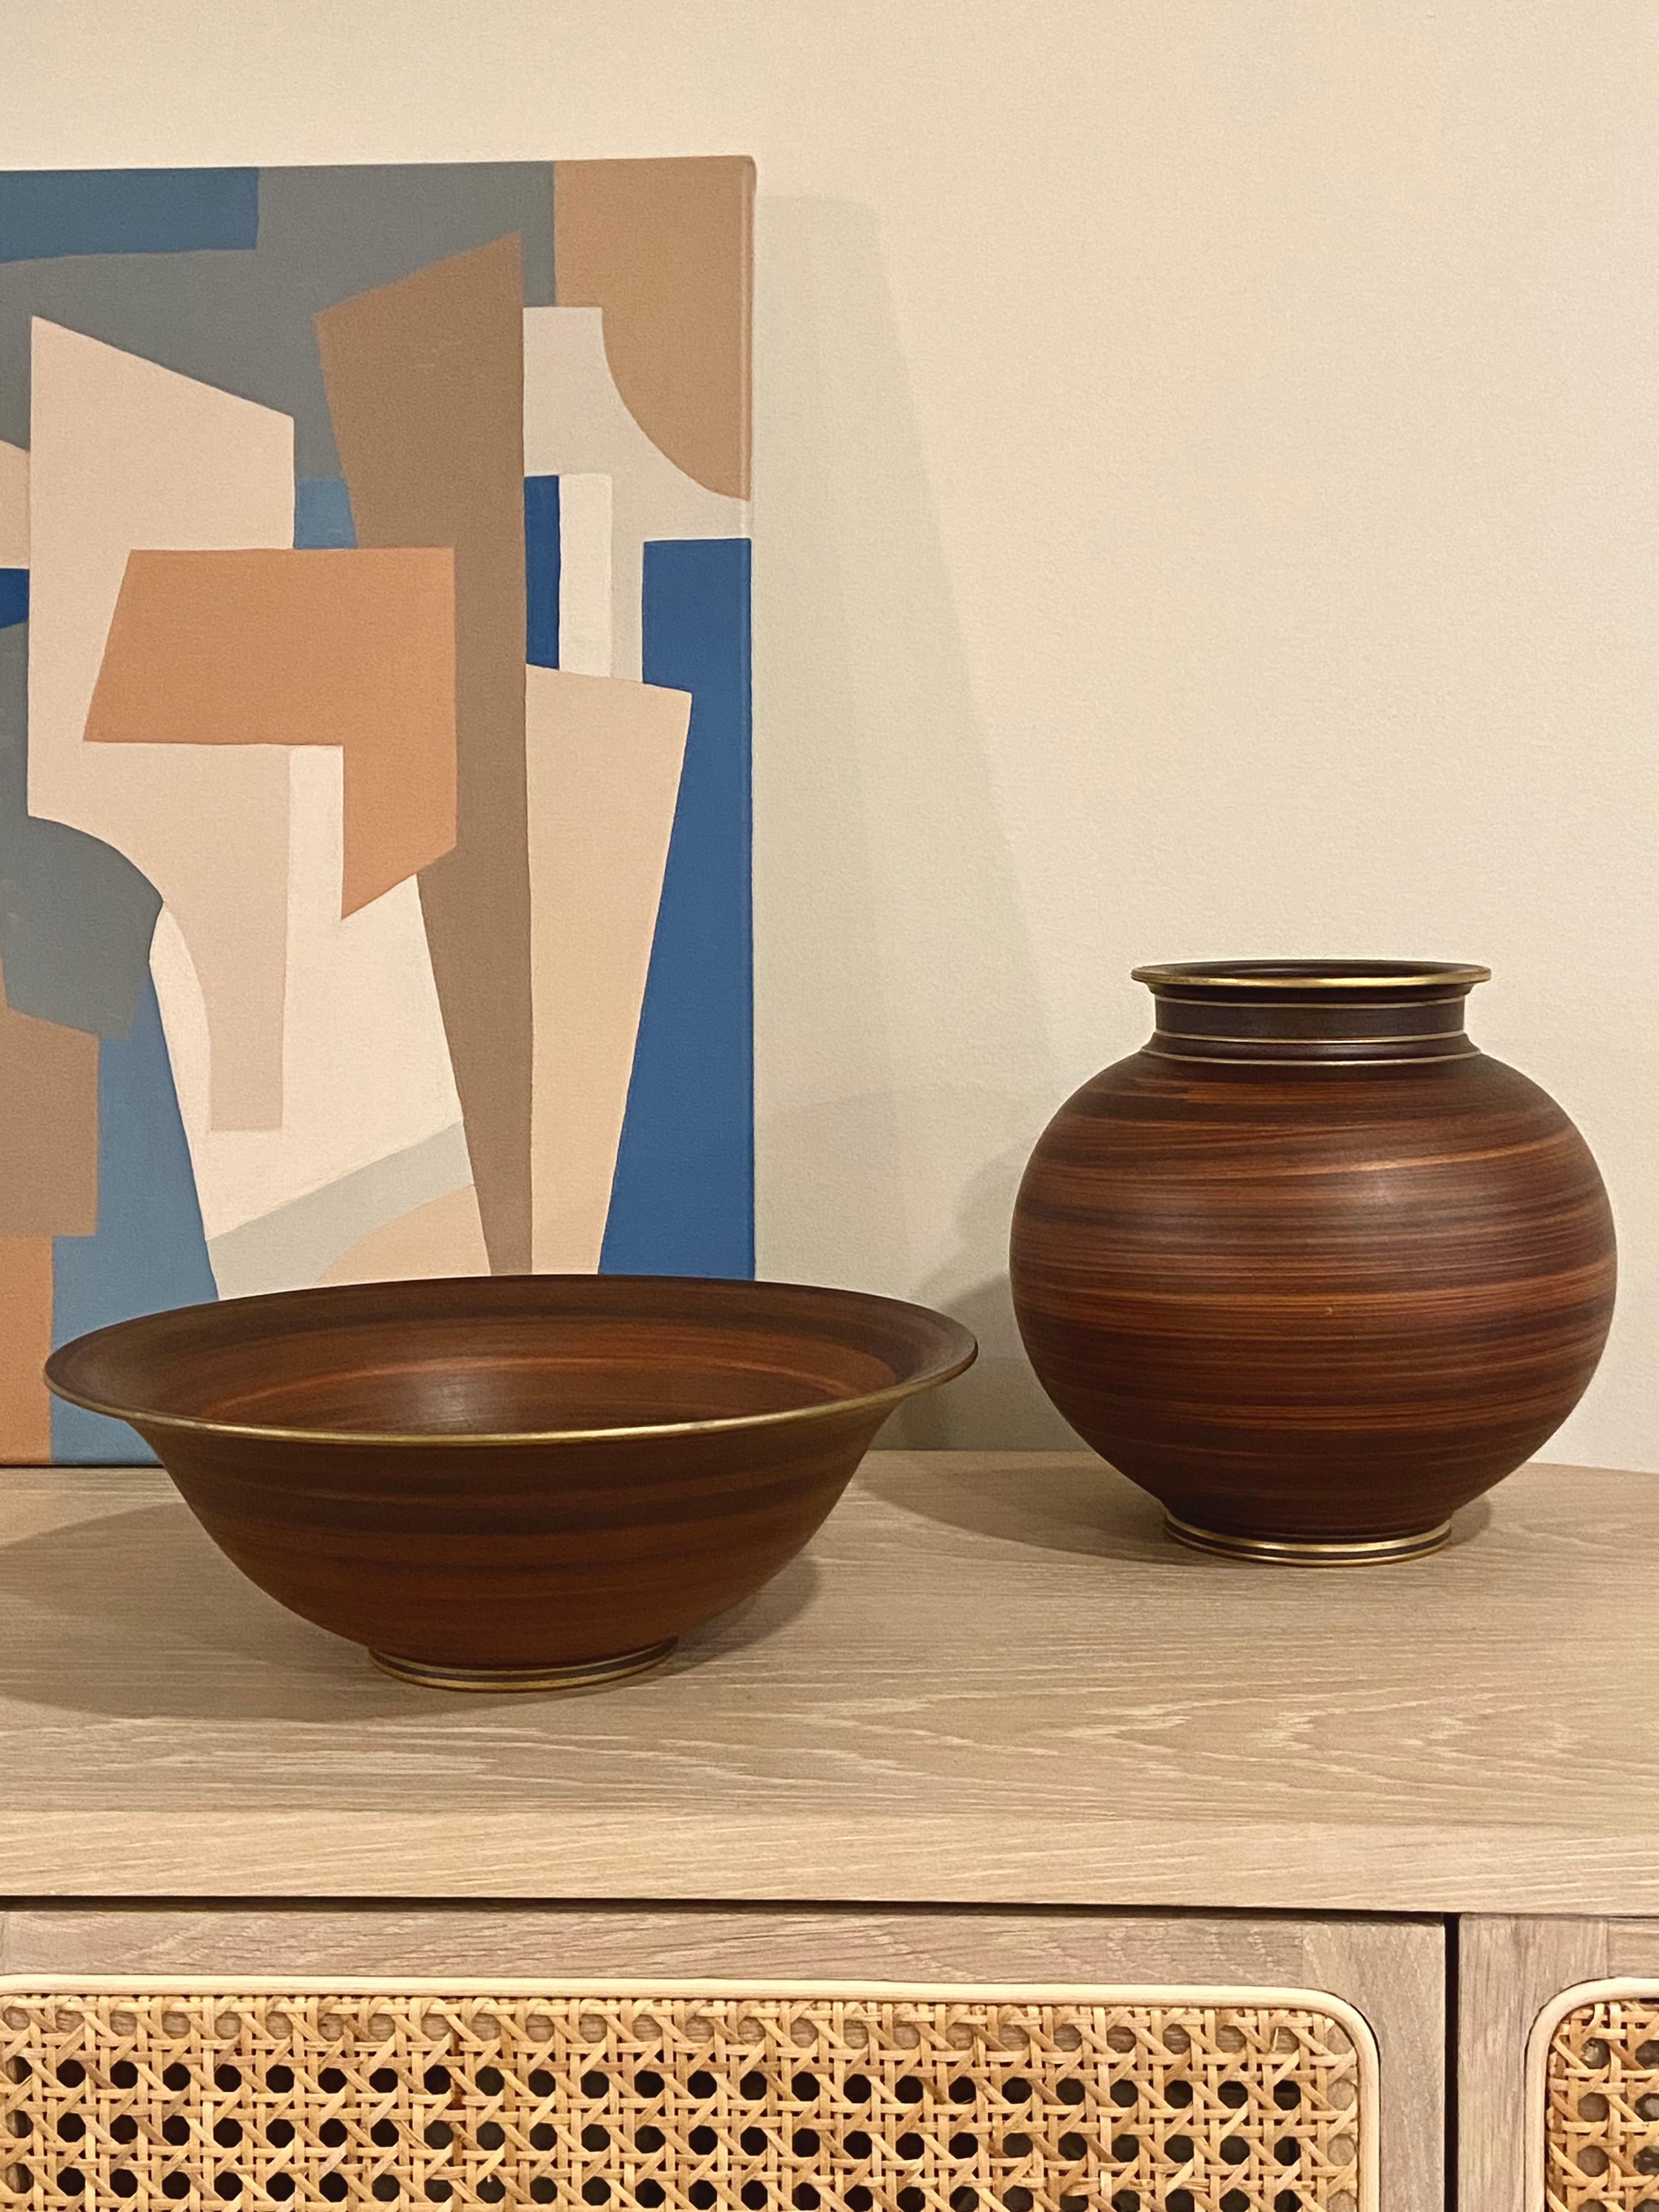 Eine fantastische antike Keramikvase von Gunnar Nylund. Diese Vase hat eine außergewöhnliche handgemalte Boise-Holzmaserung. Es hat eine matte, gebrannte Siena-Lasur, die von Hand mit einem trockenen Pinsel aufgetragen wurde, und der Effekt ist eine